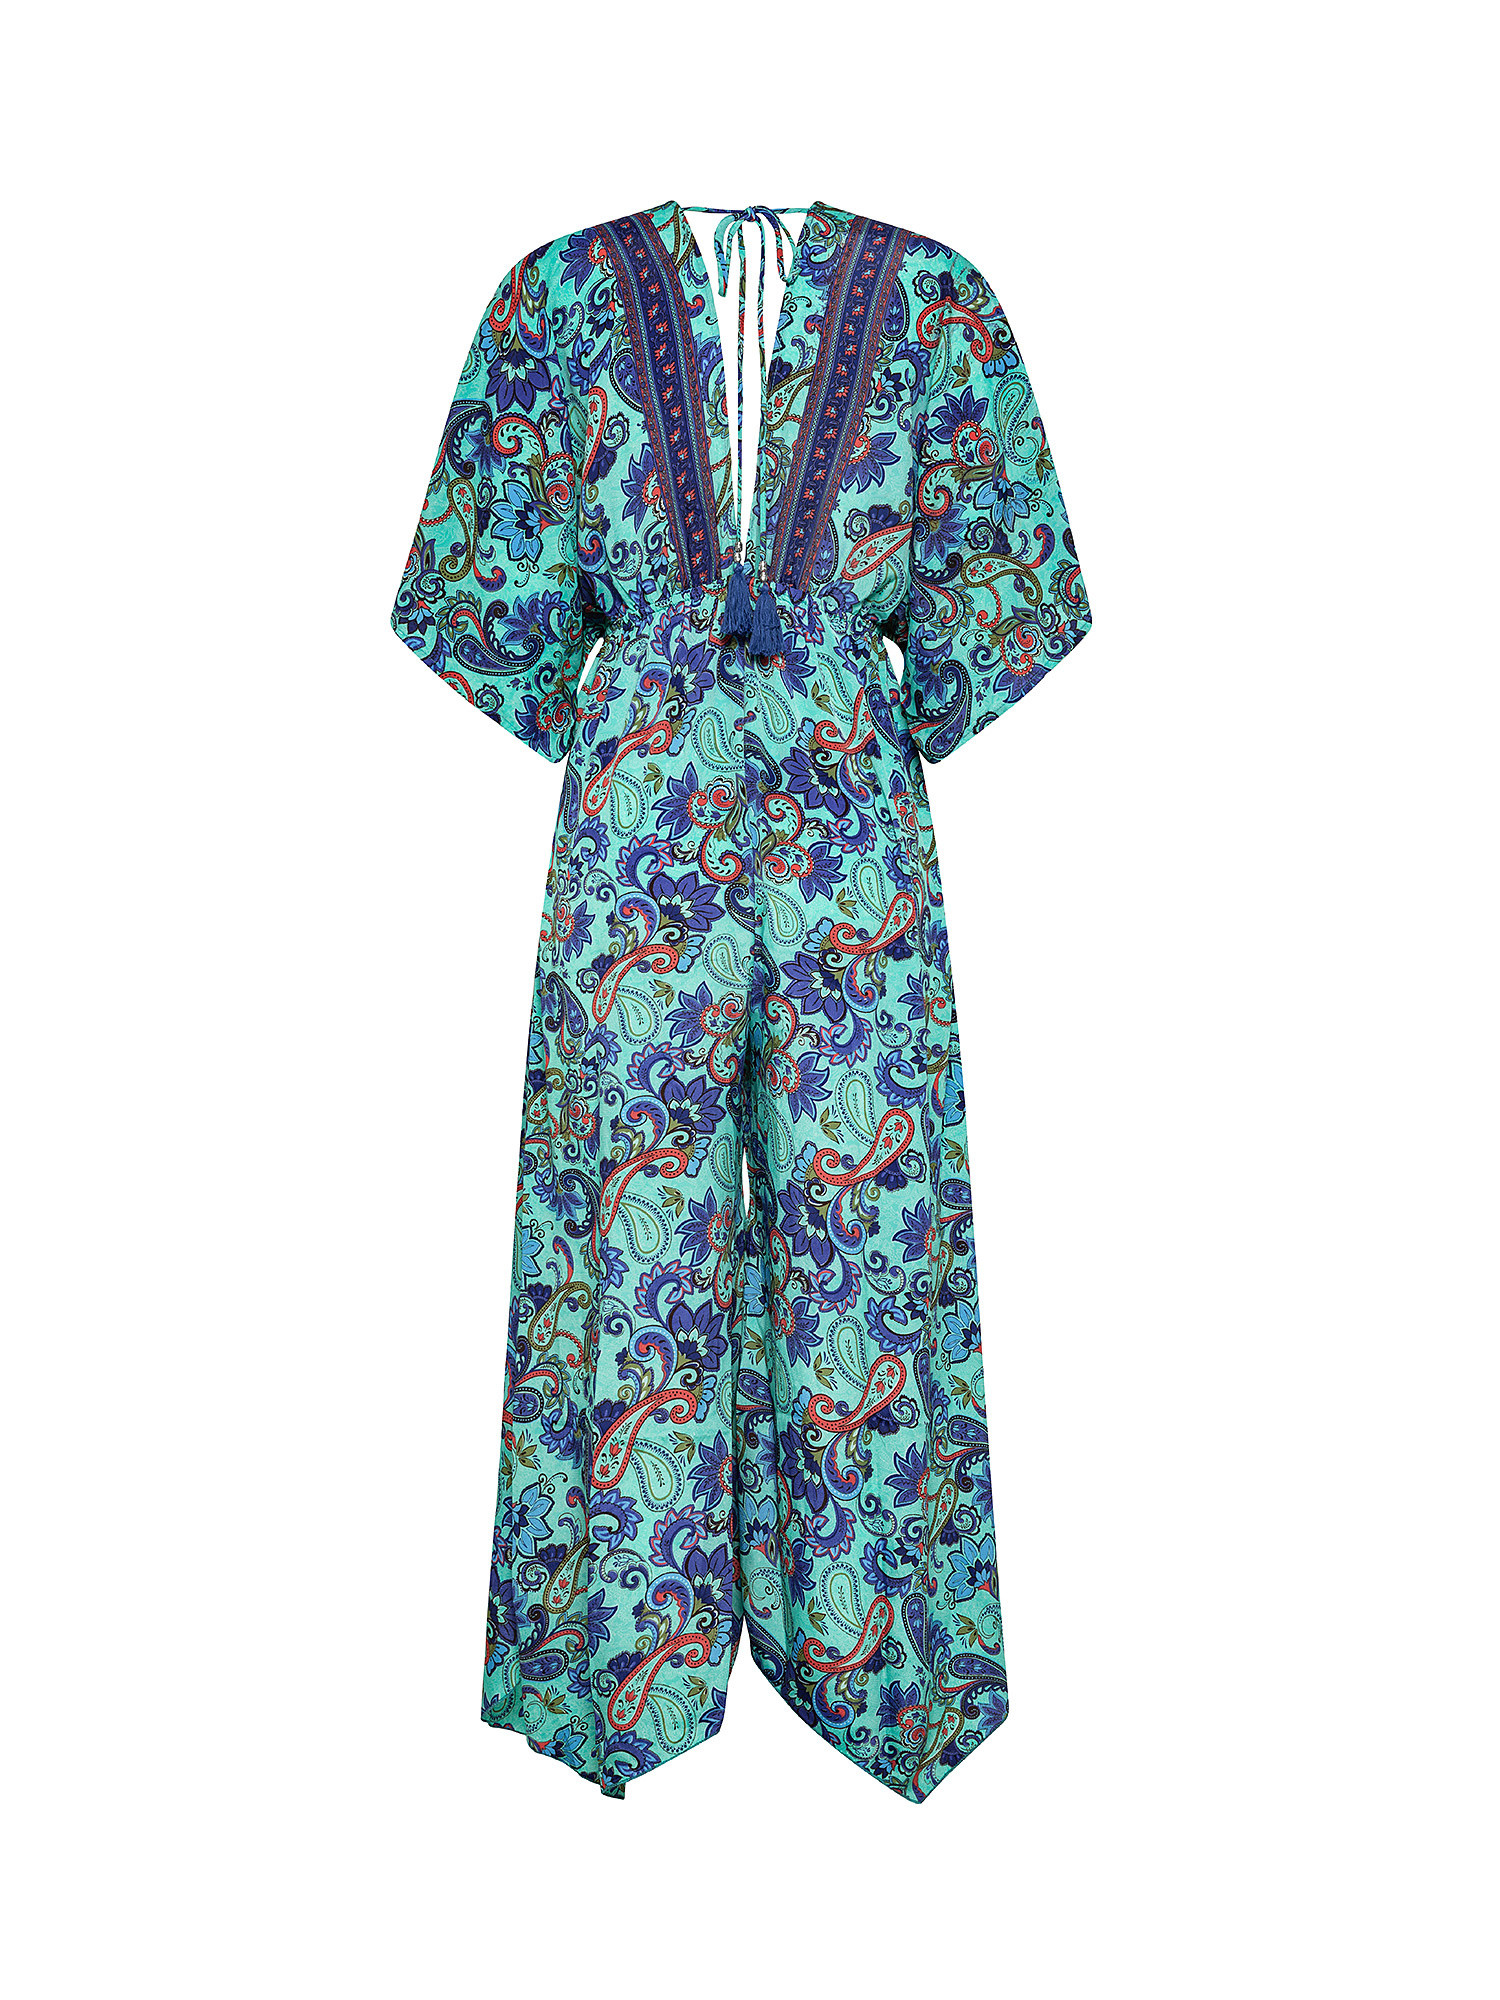 Tuta kimono in fantasia, Multicolor, large